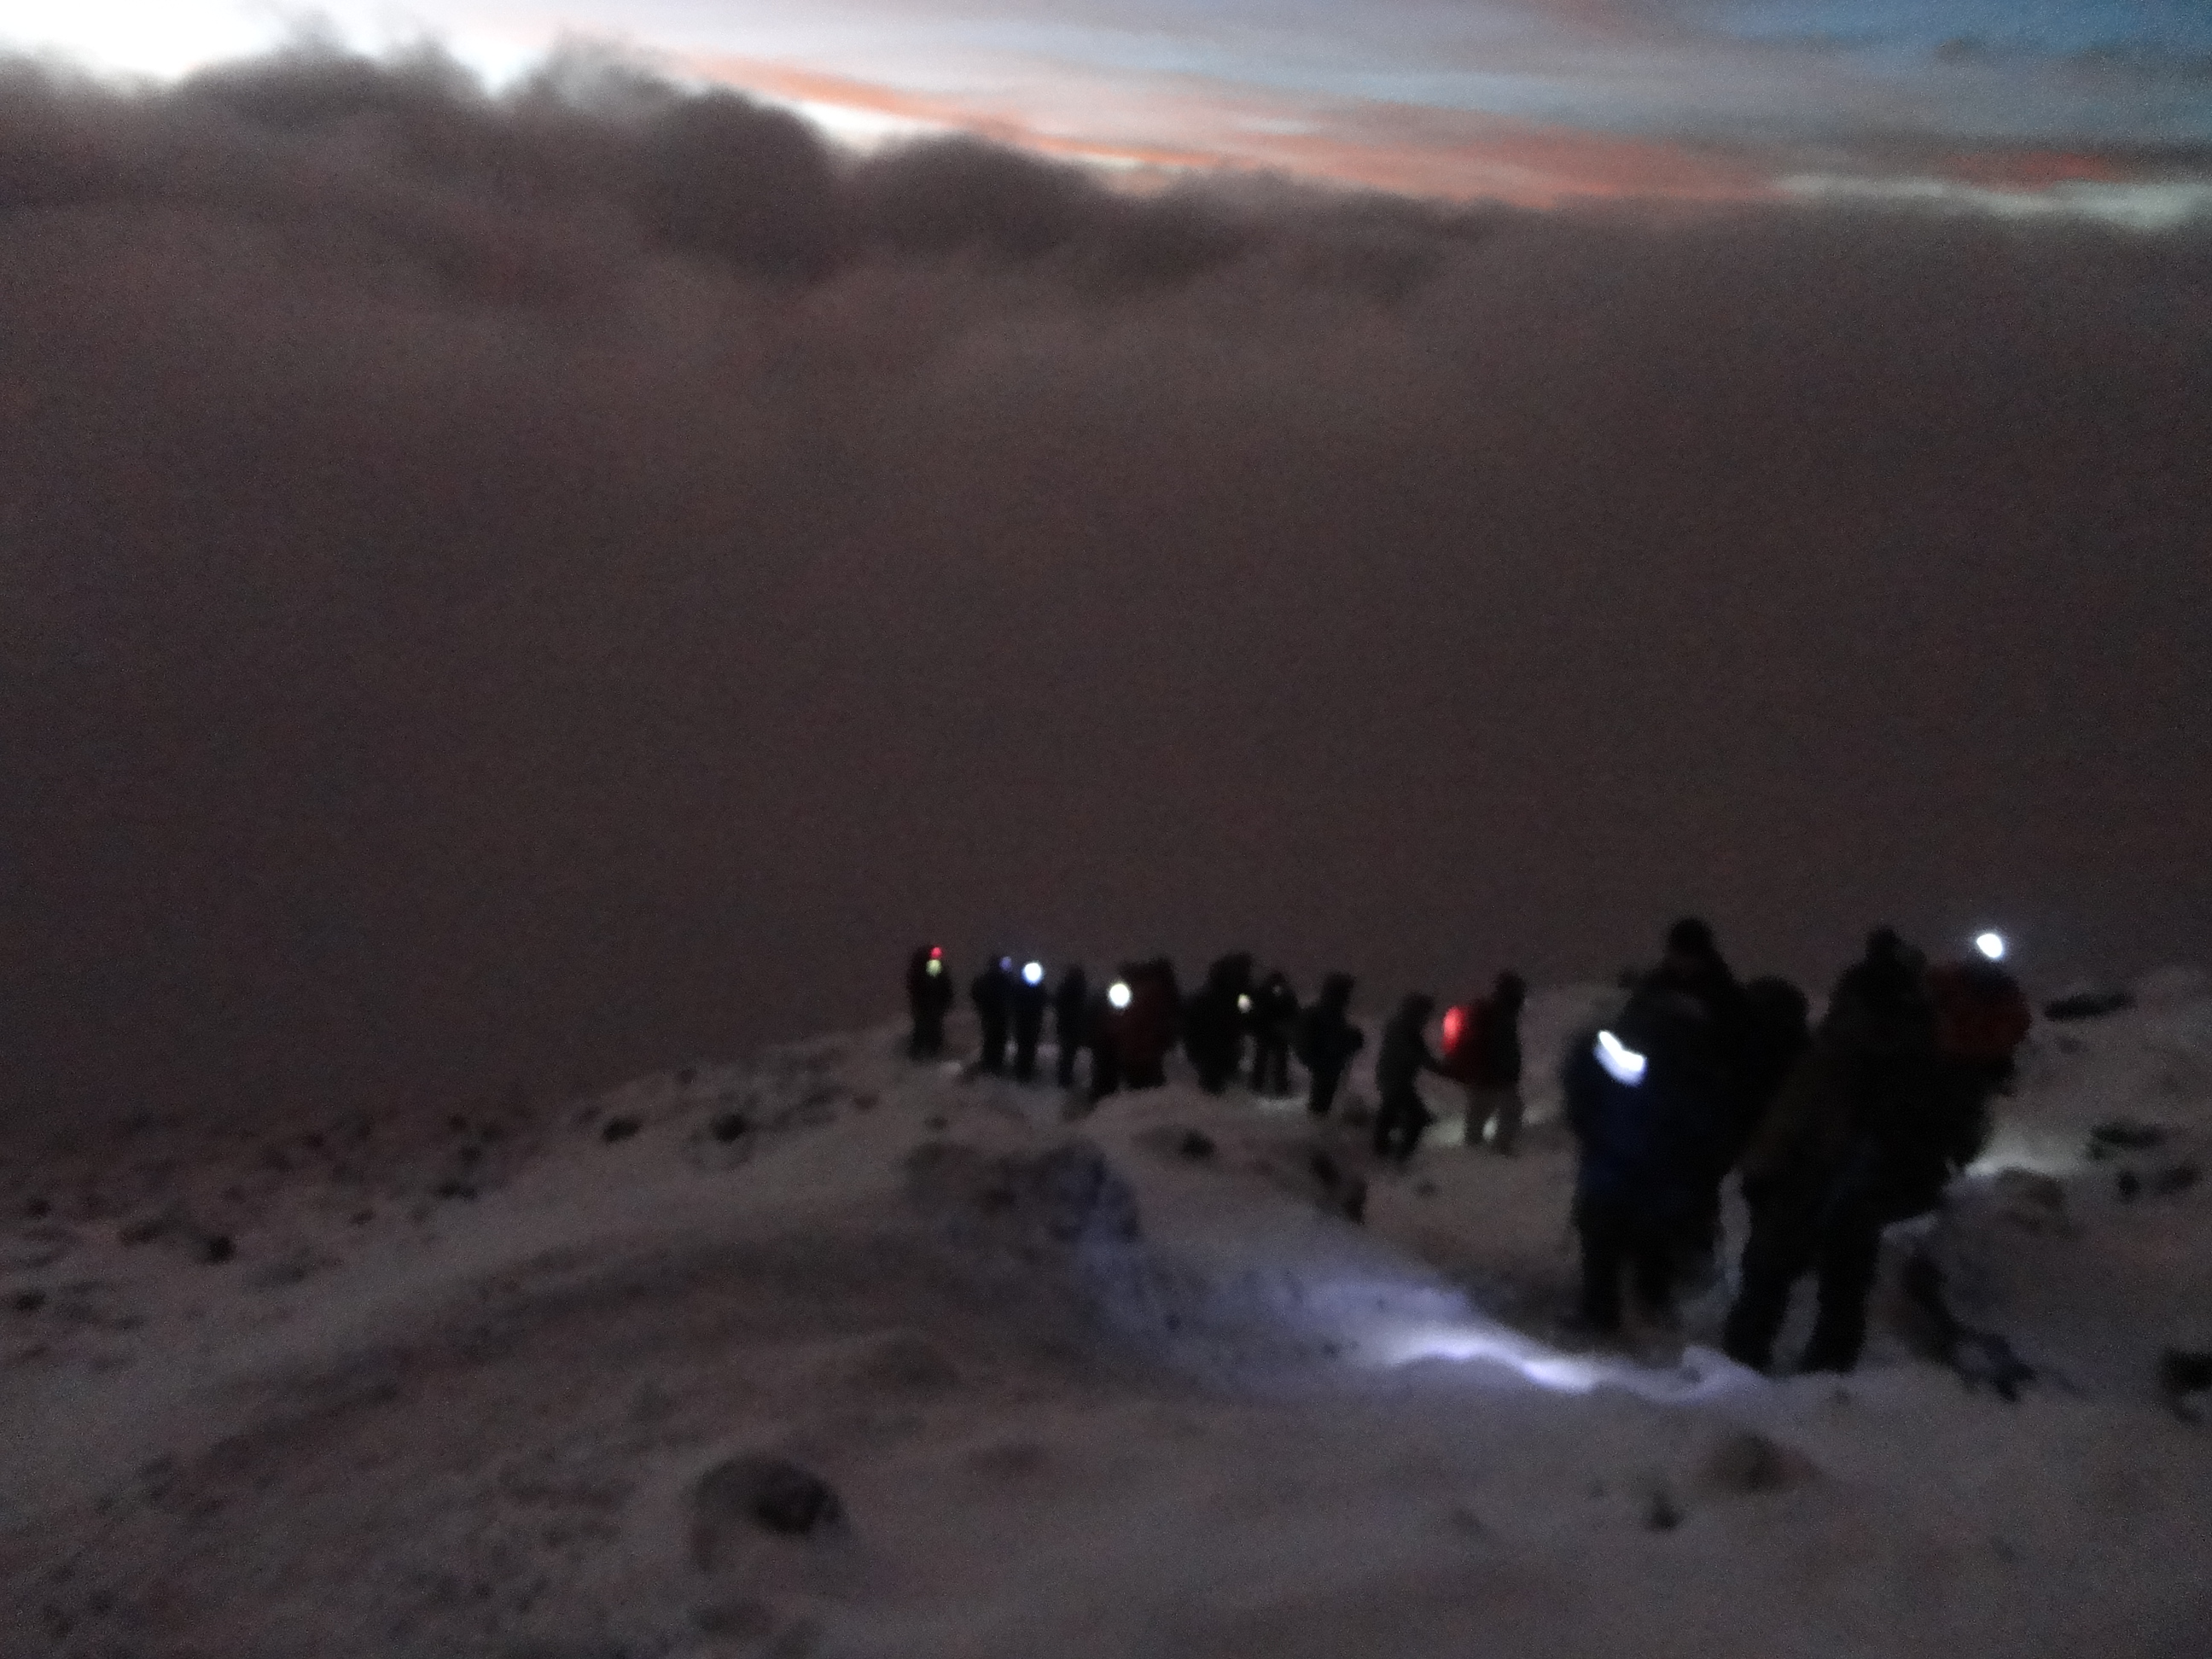 Summit night on Kilimanjaro